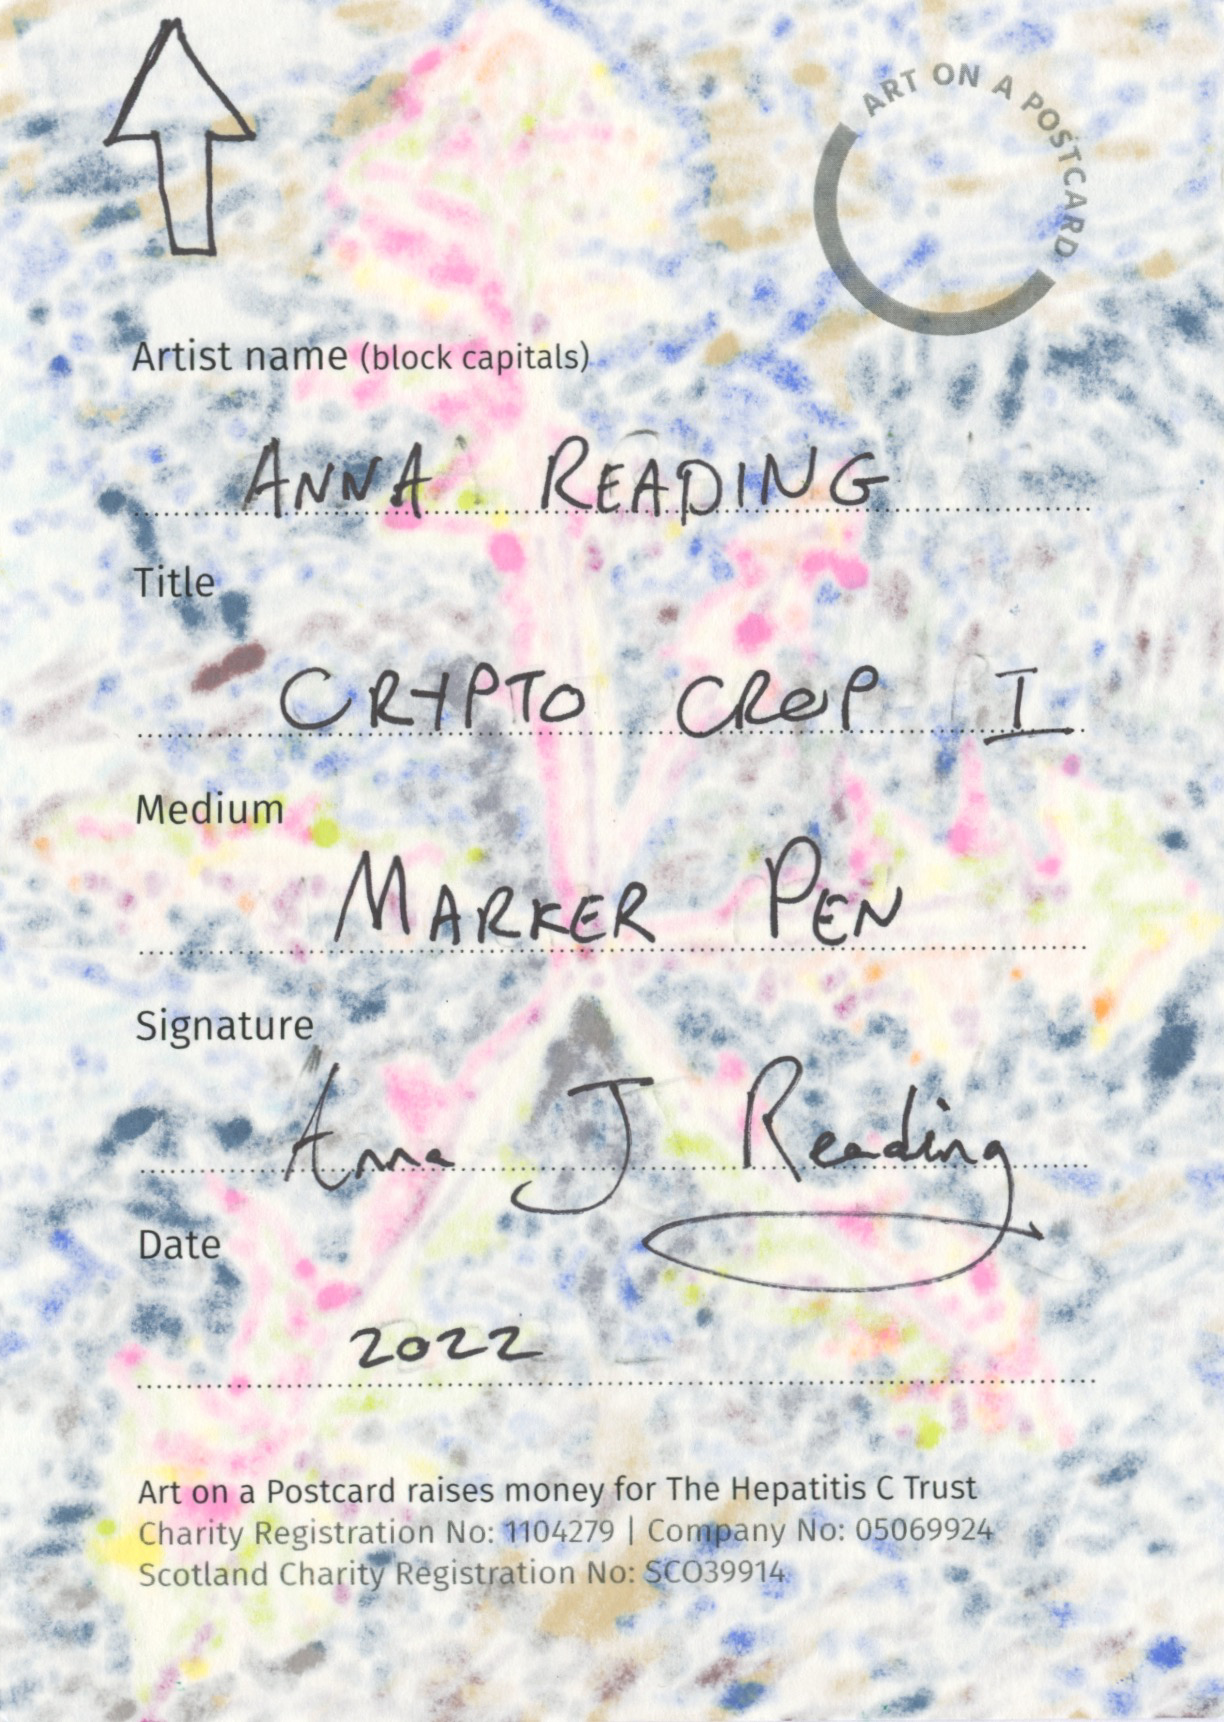 76. Anna Reading - Crypto Crop I - BACK